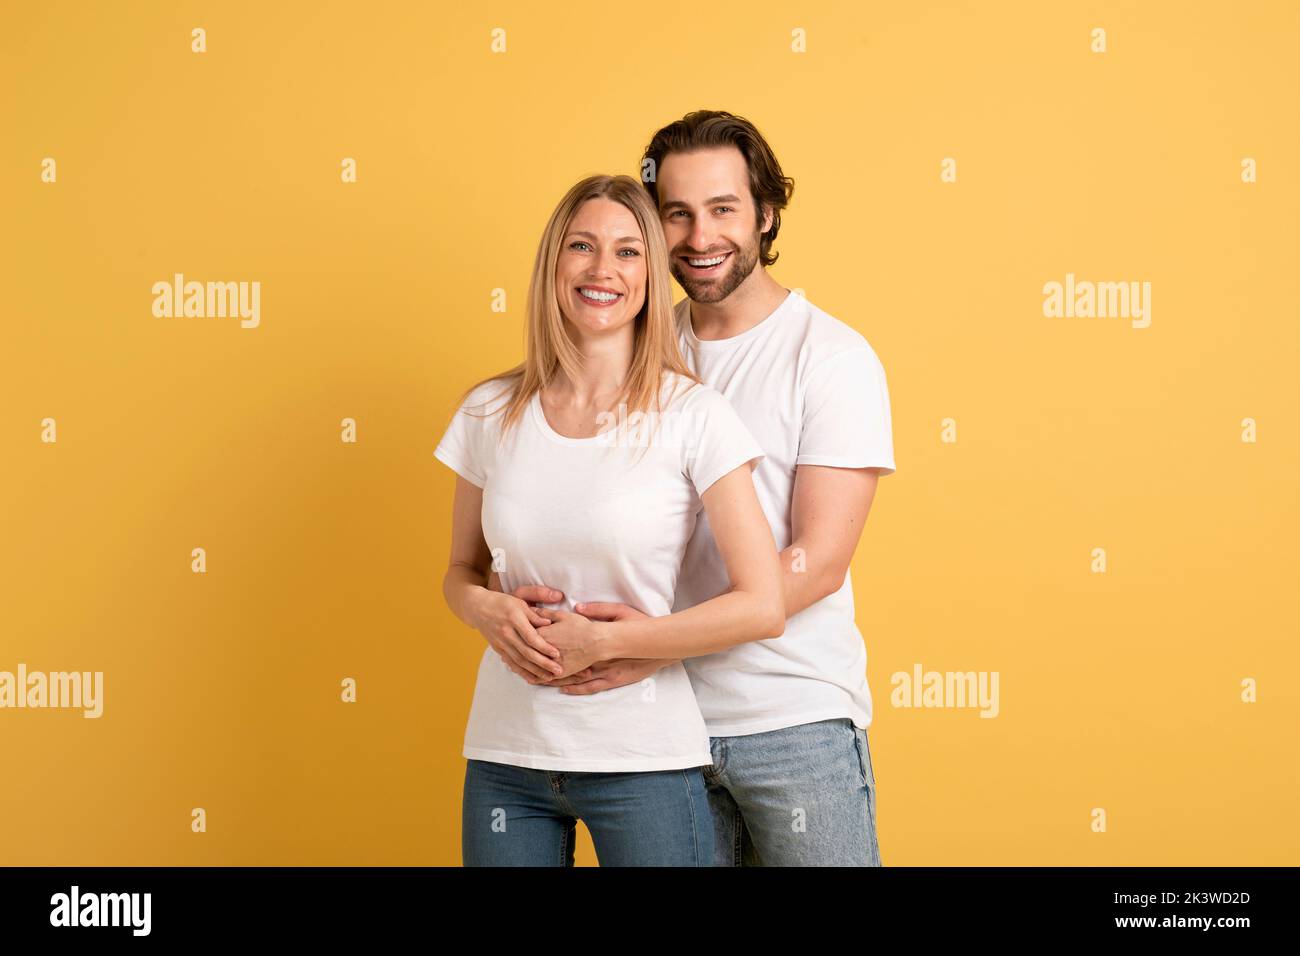 Liebe, Familienbeziehung und Romantik. Lächelnder junger kaukasischer Mann umarmt Frau in weißen T-Shirts Stockfoto